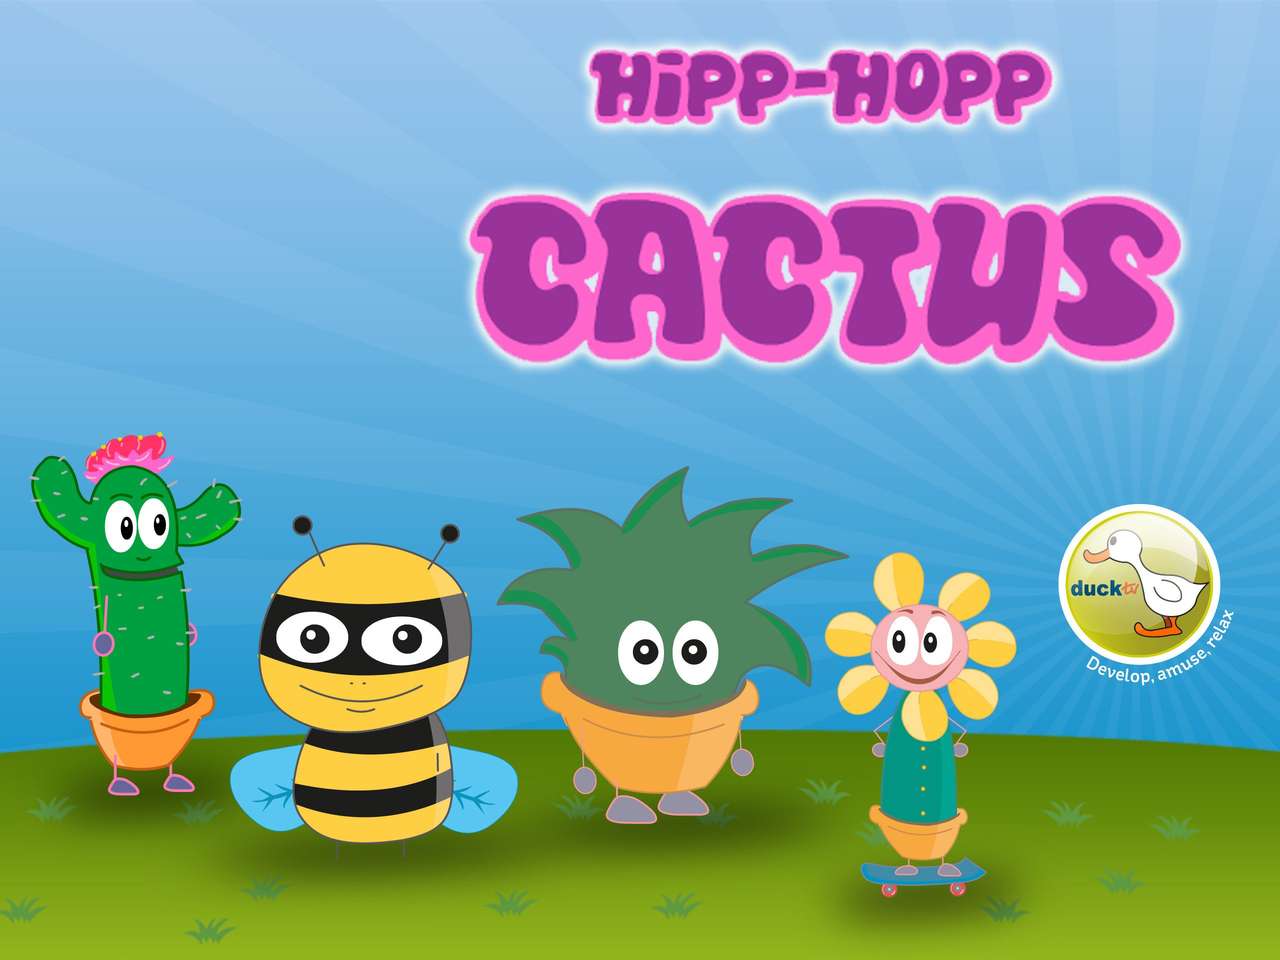 ROMPECABEZAS DE TV HIPP-HOPP CACTUS PATO rompecabezas en línea